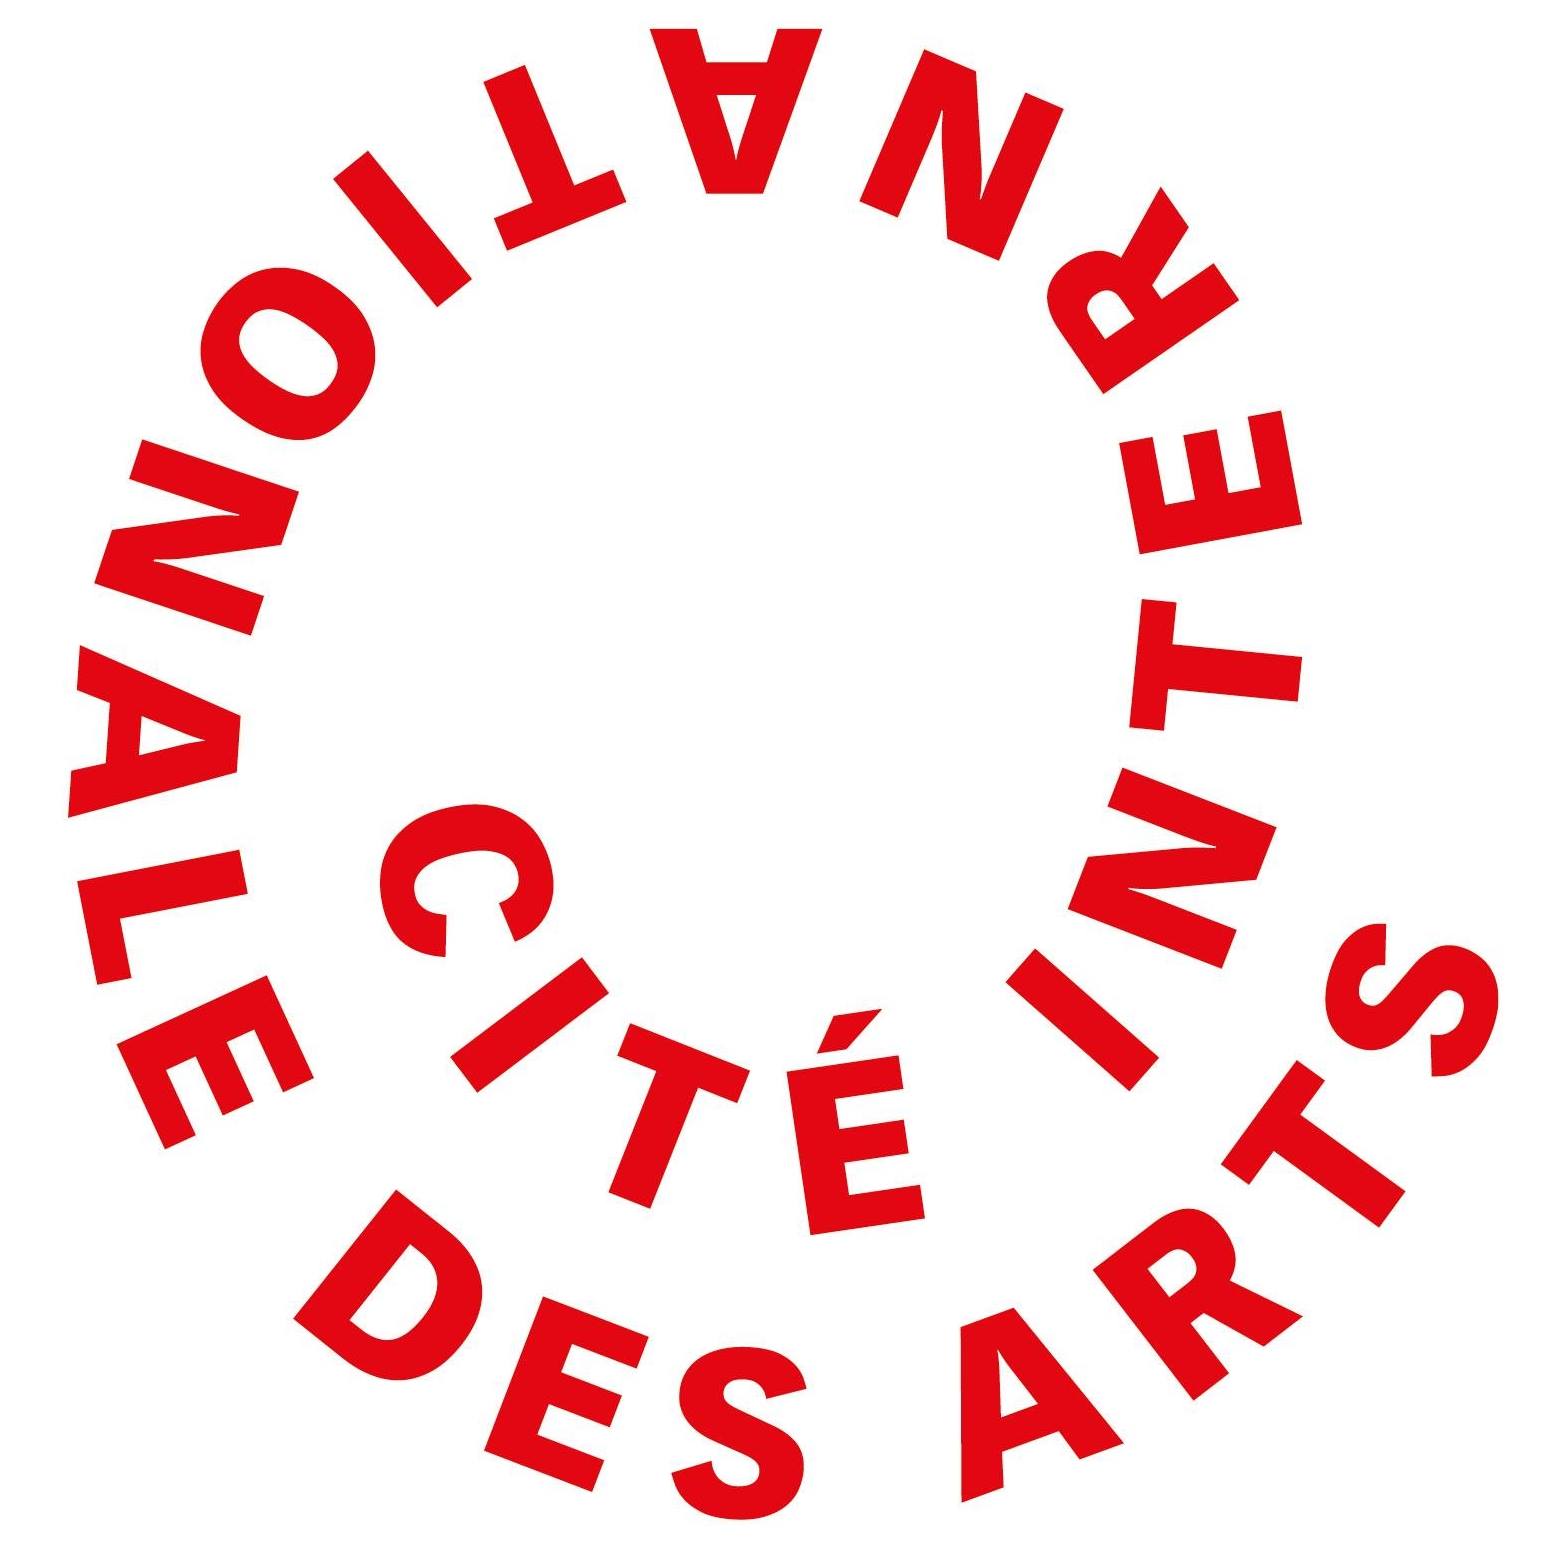 Profile picture of the artspace Cité Internationale des Arts